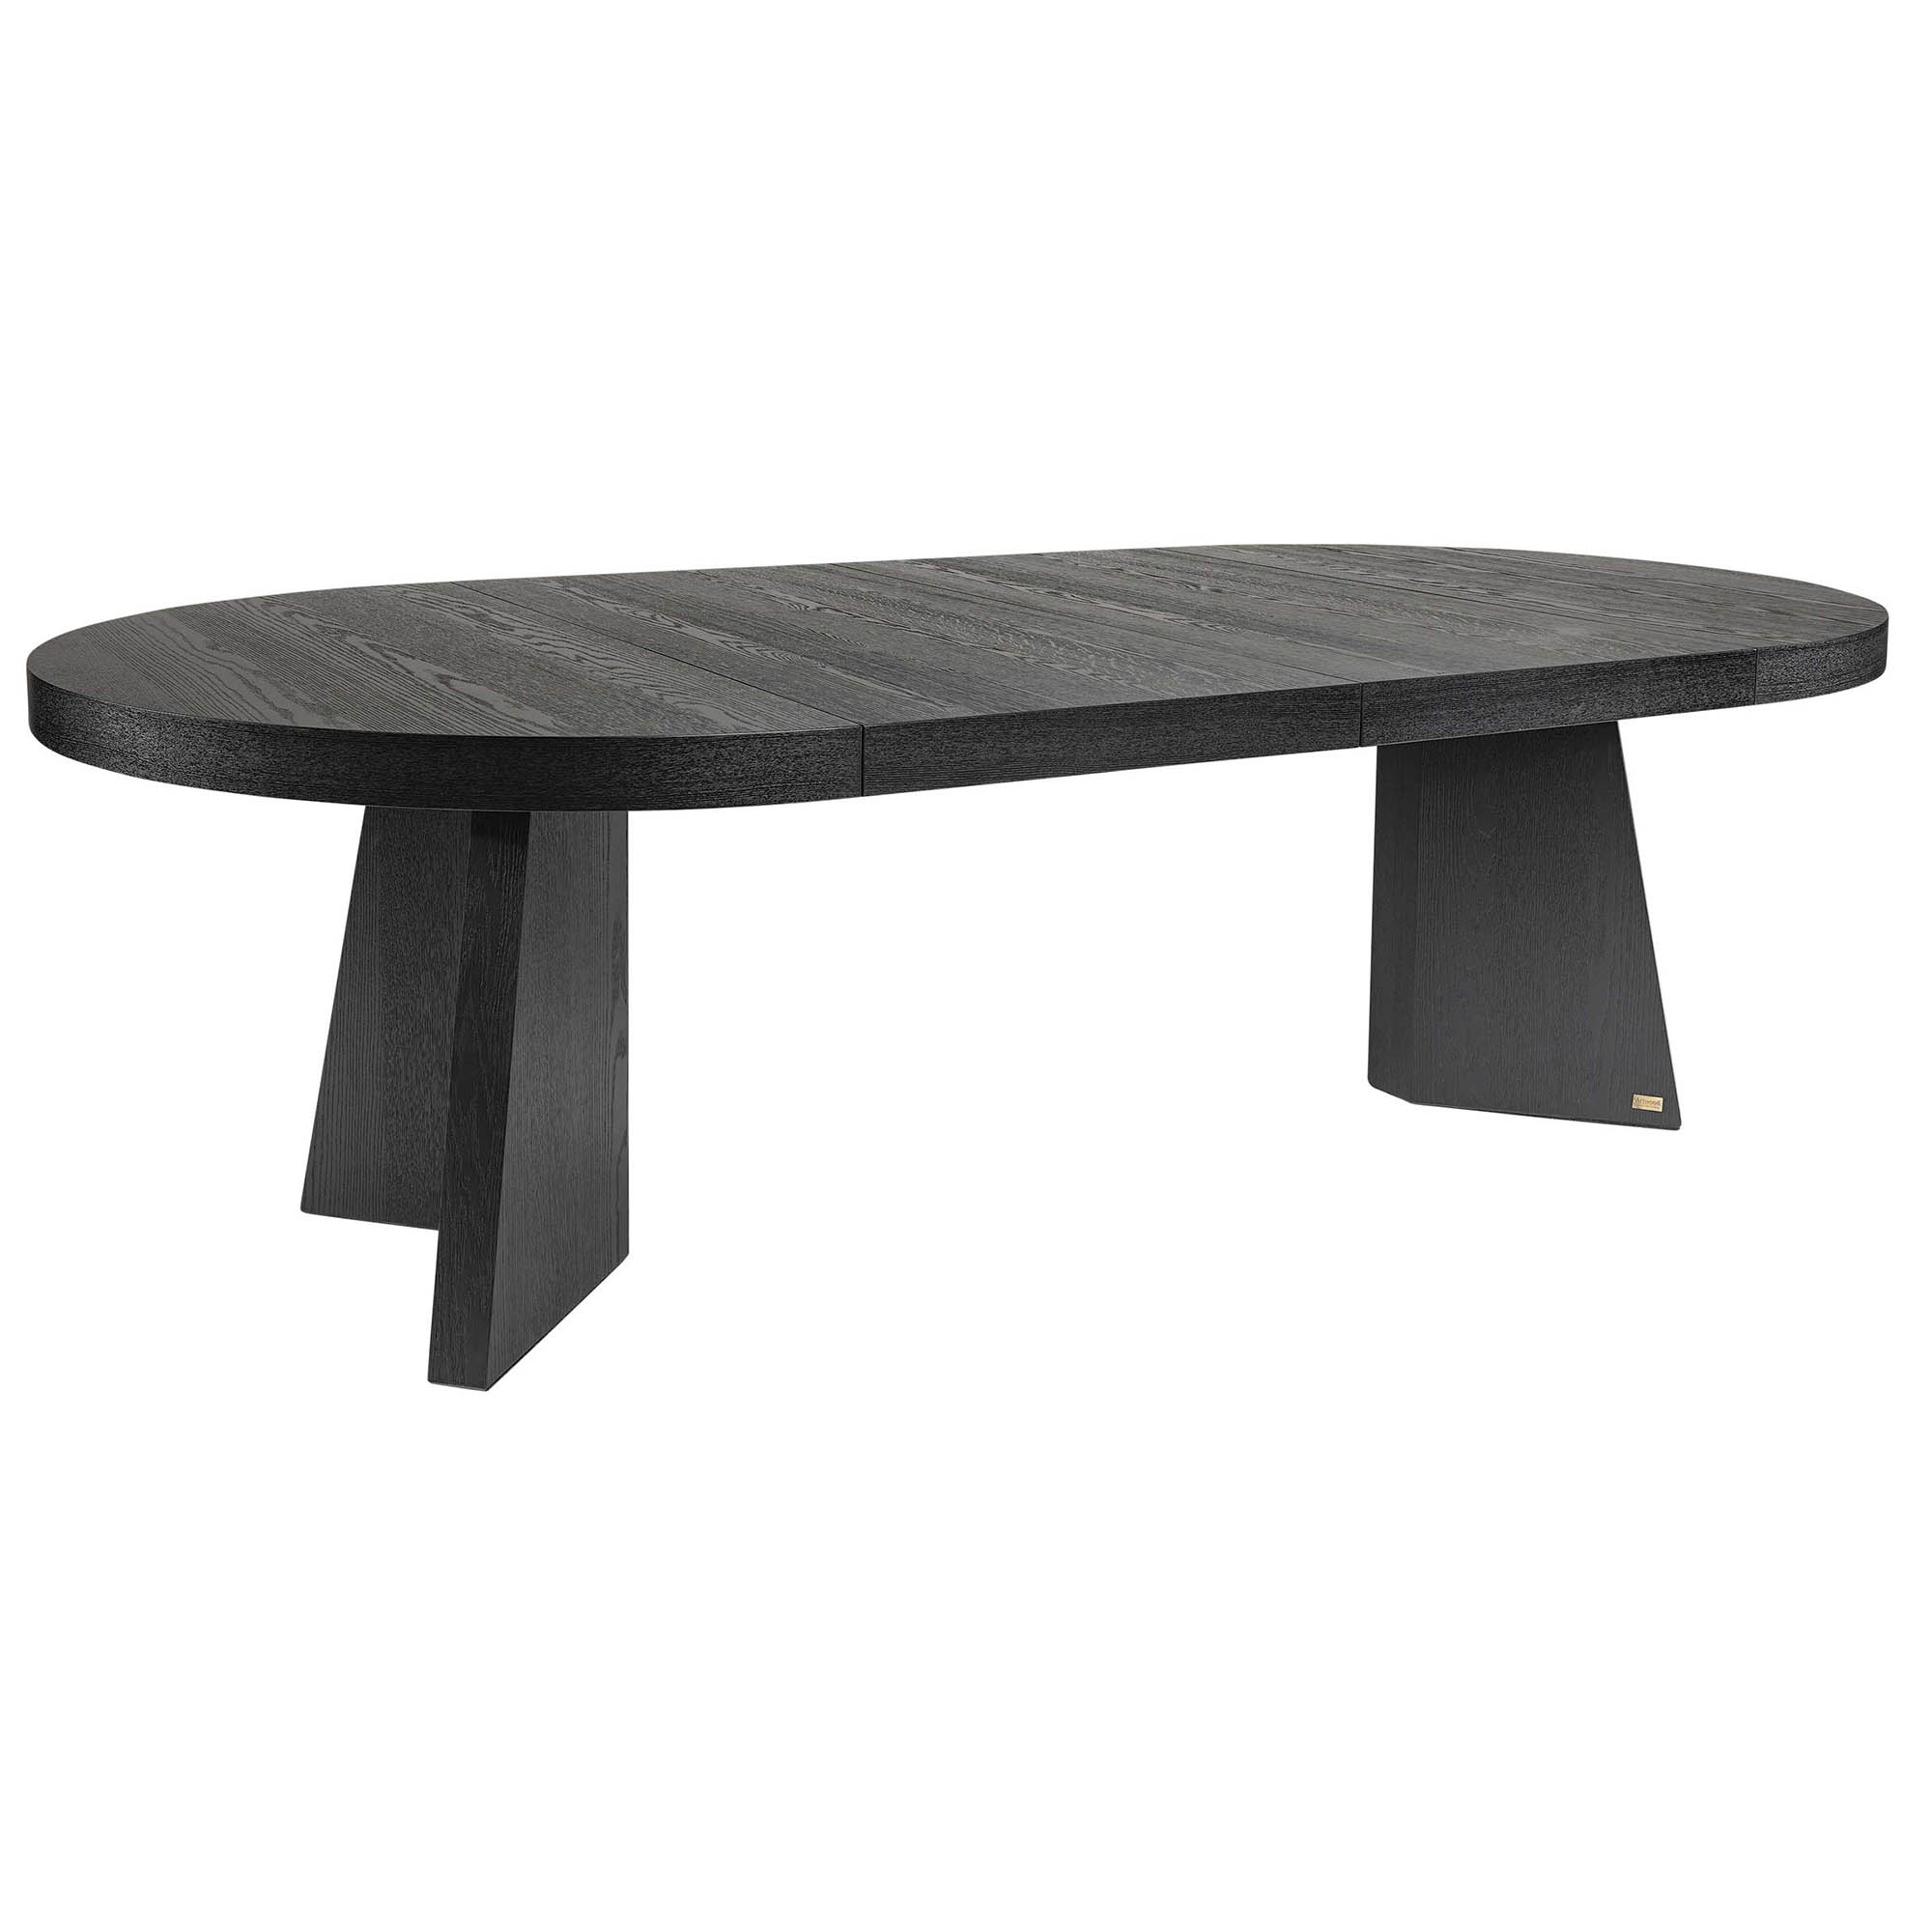 Trent förlängningsbart matbord svart 130-250x130 cm